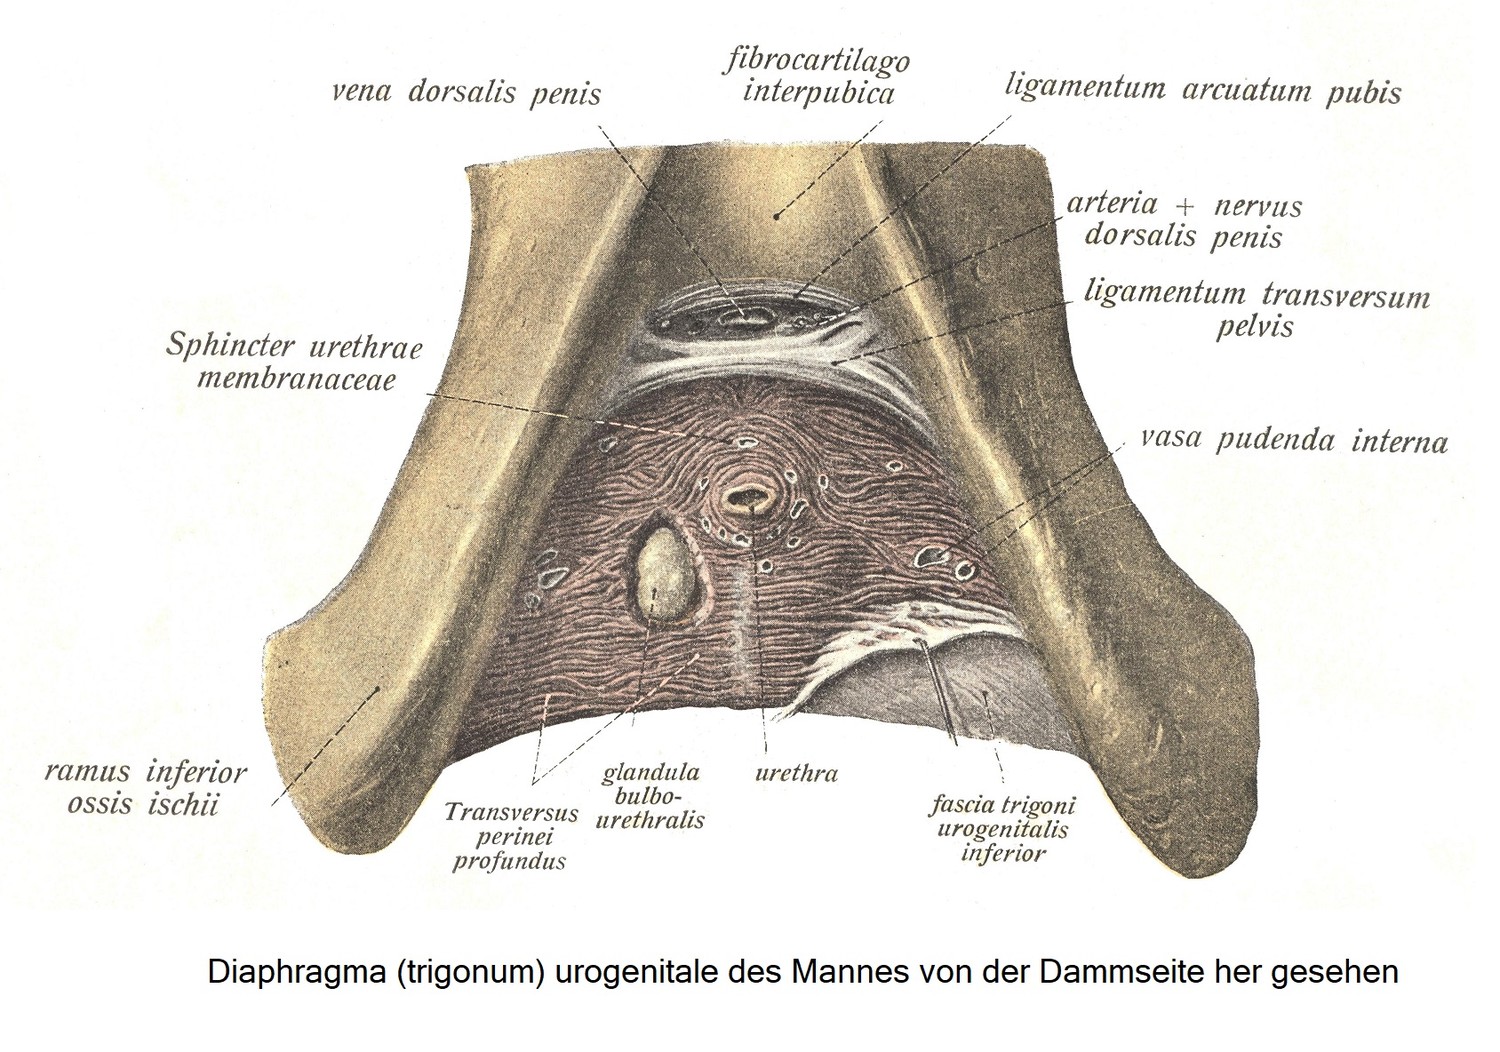 Мужская мочеполовая диафрагма (trigonum), вид со стороны промежности